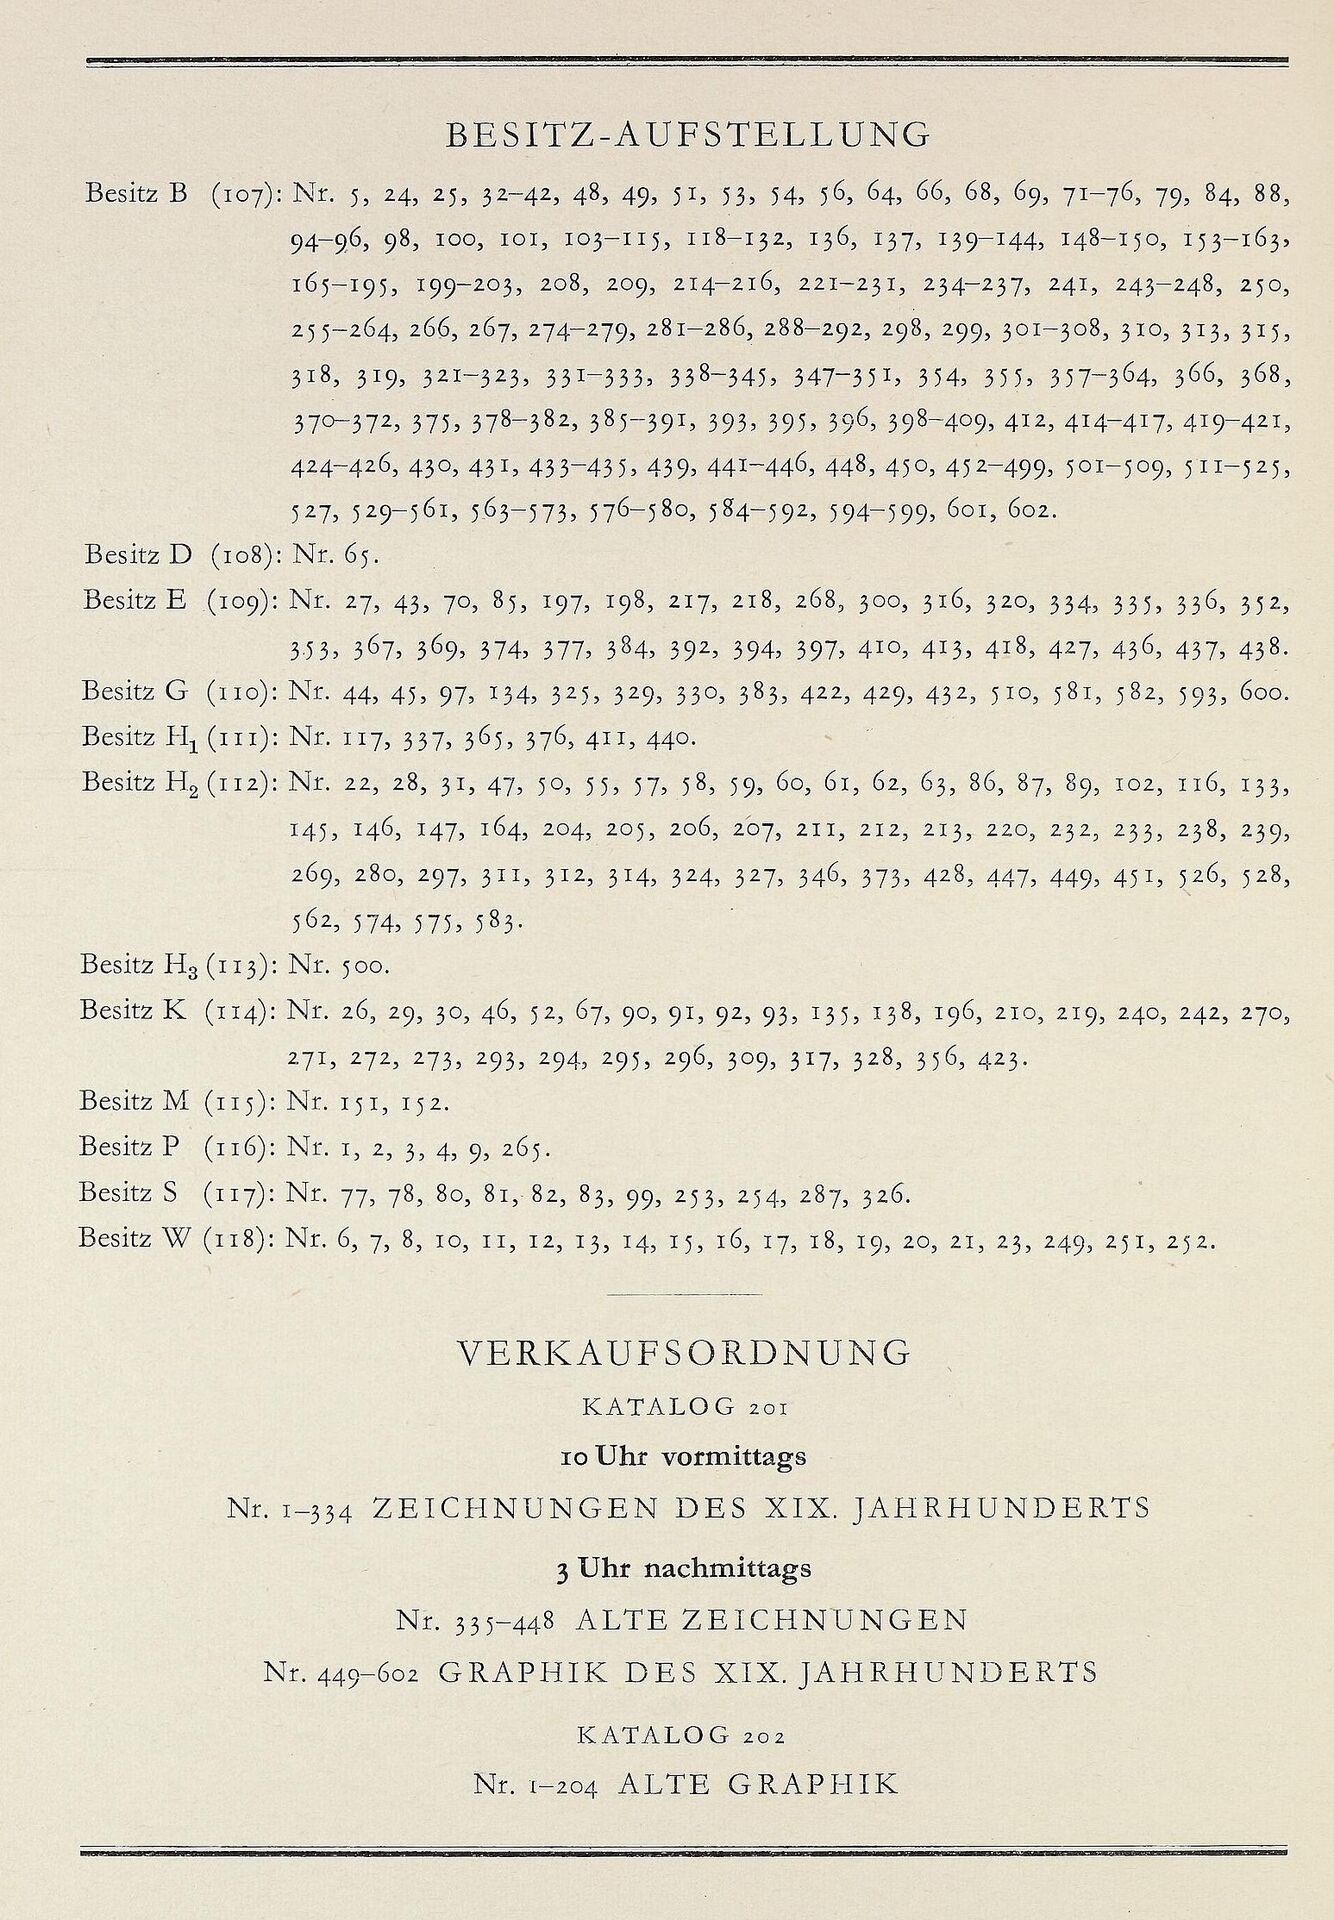 Abb. 9 boerner1939_04_28_Einlieferungsverzeichnis.jpg